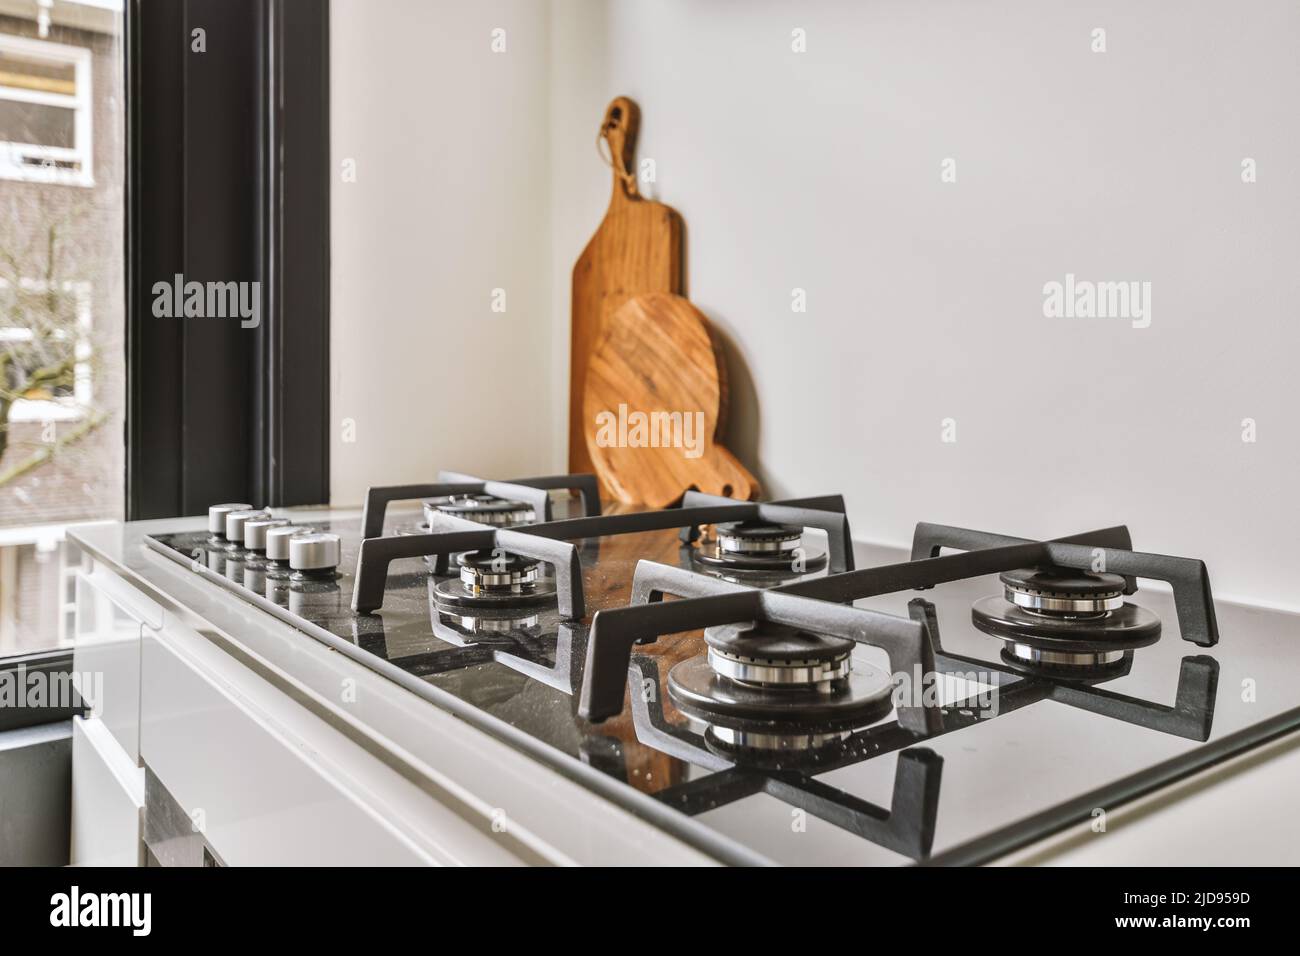 Estufas de hierro fundido fotografías e imágenes de alta resolución - Alamy